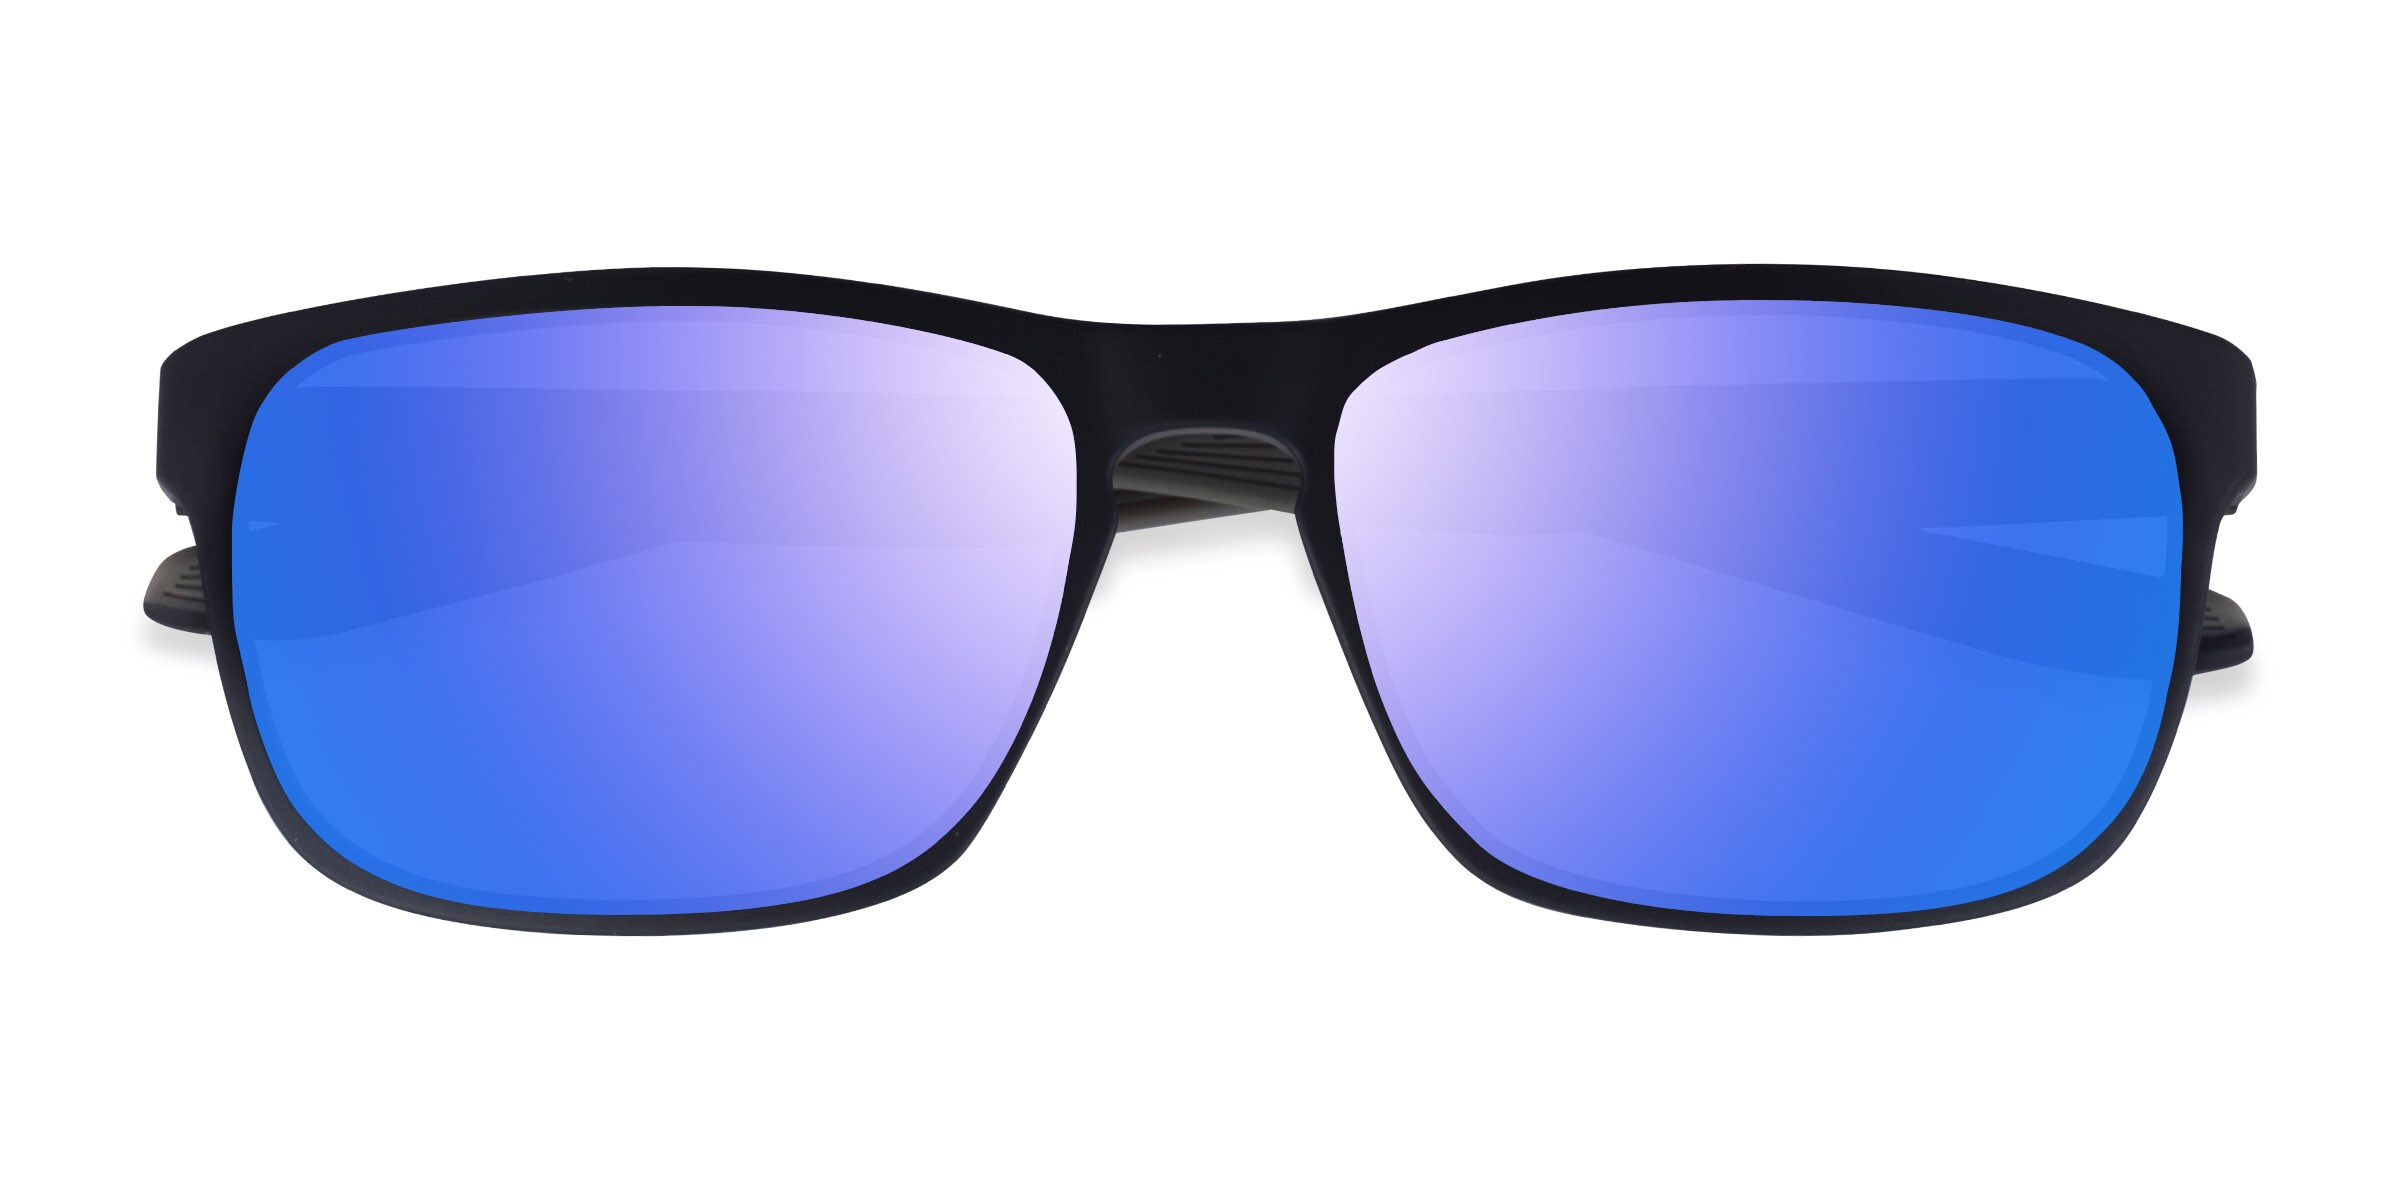 Kick - Rectangle Matte Blue Gray Frame Sunglasses For Men 